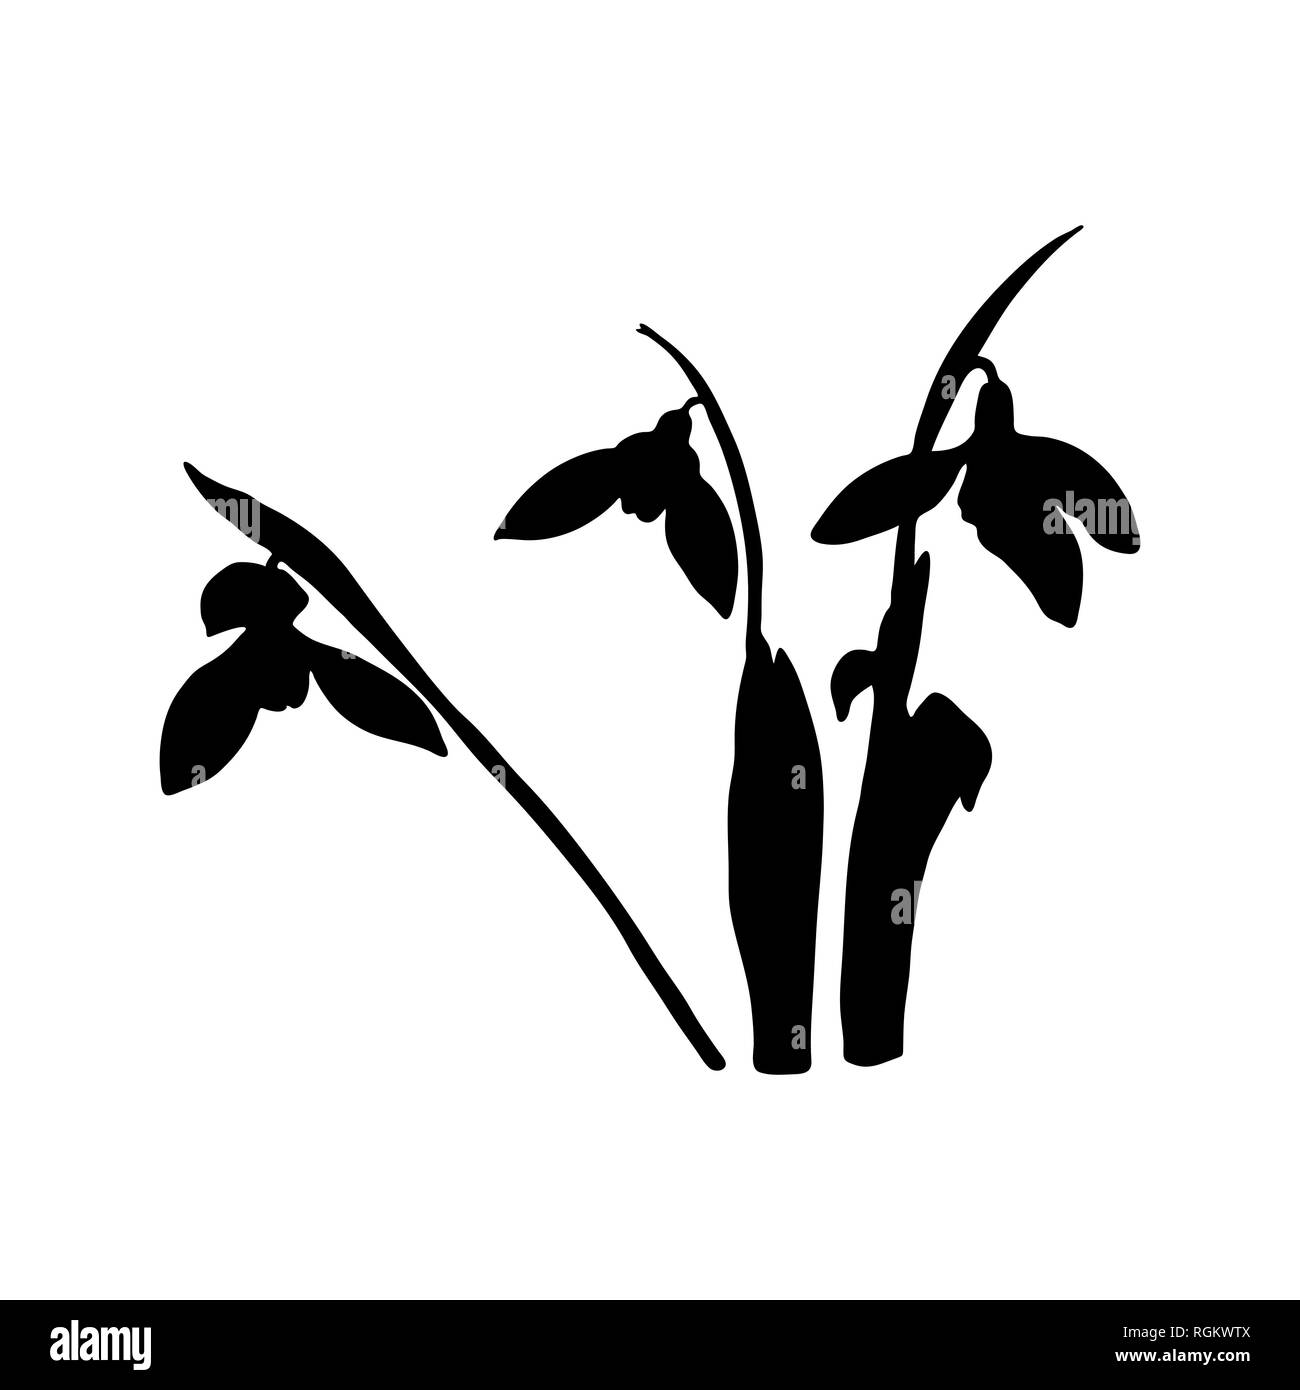 Snowdrop fiori di primavera silhouette nera. Delicato Galanthus nivalis fiore, simboli di primavera. Snowdrop blossoms. Stile Sketsh Illustrazione Vettoriale